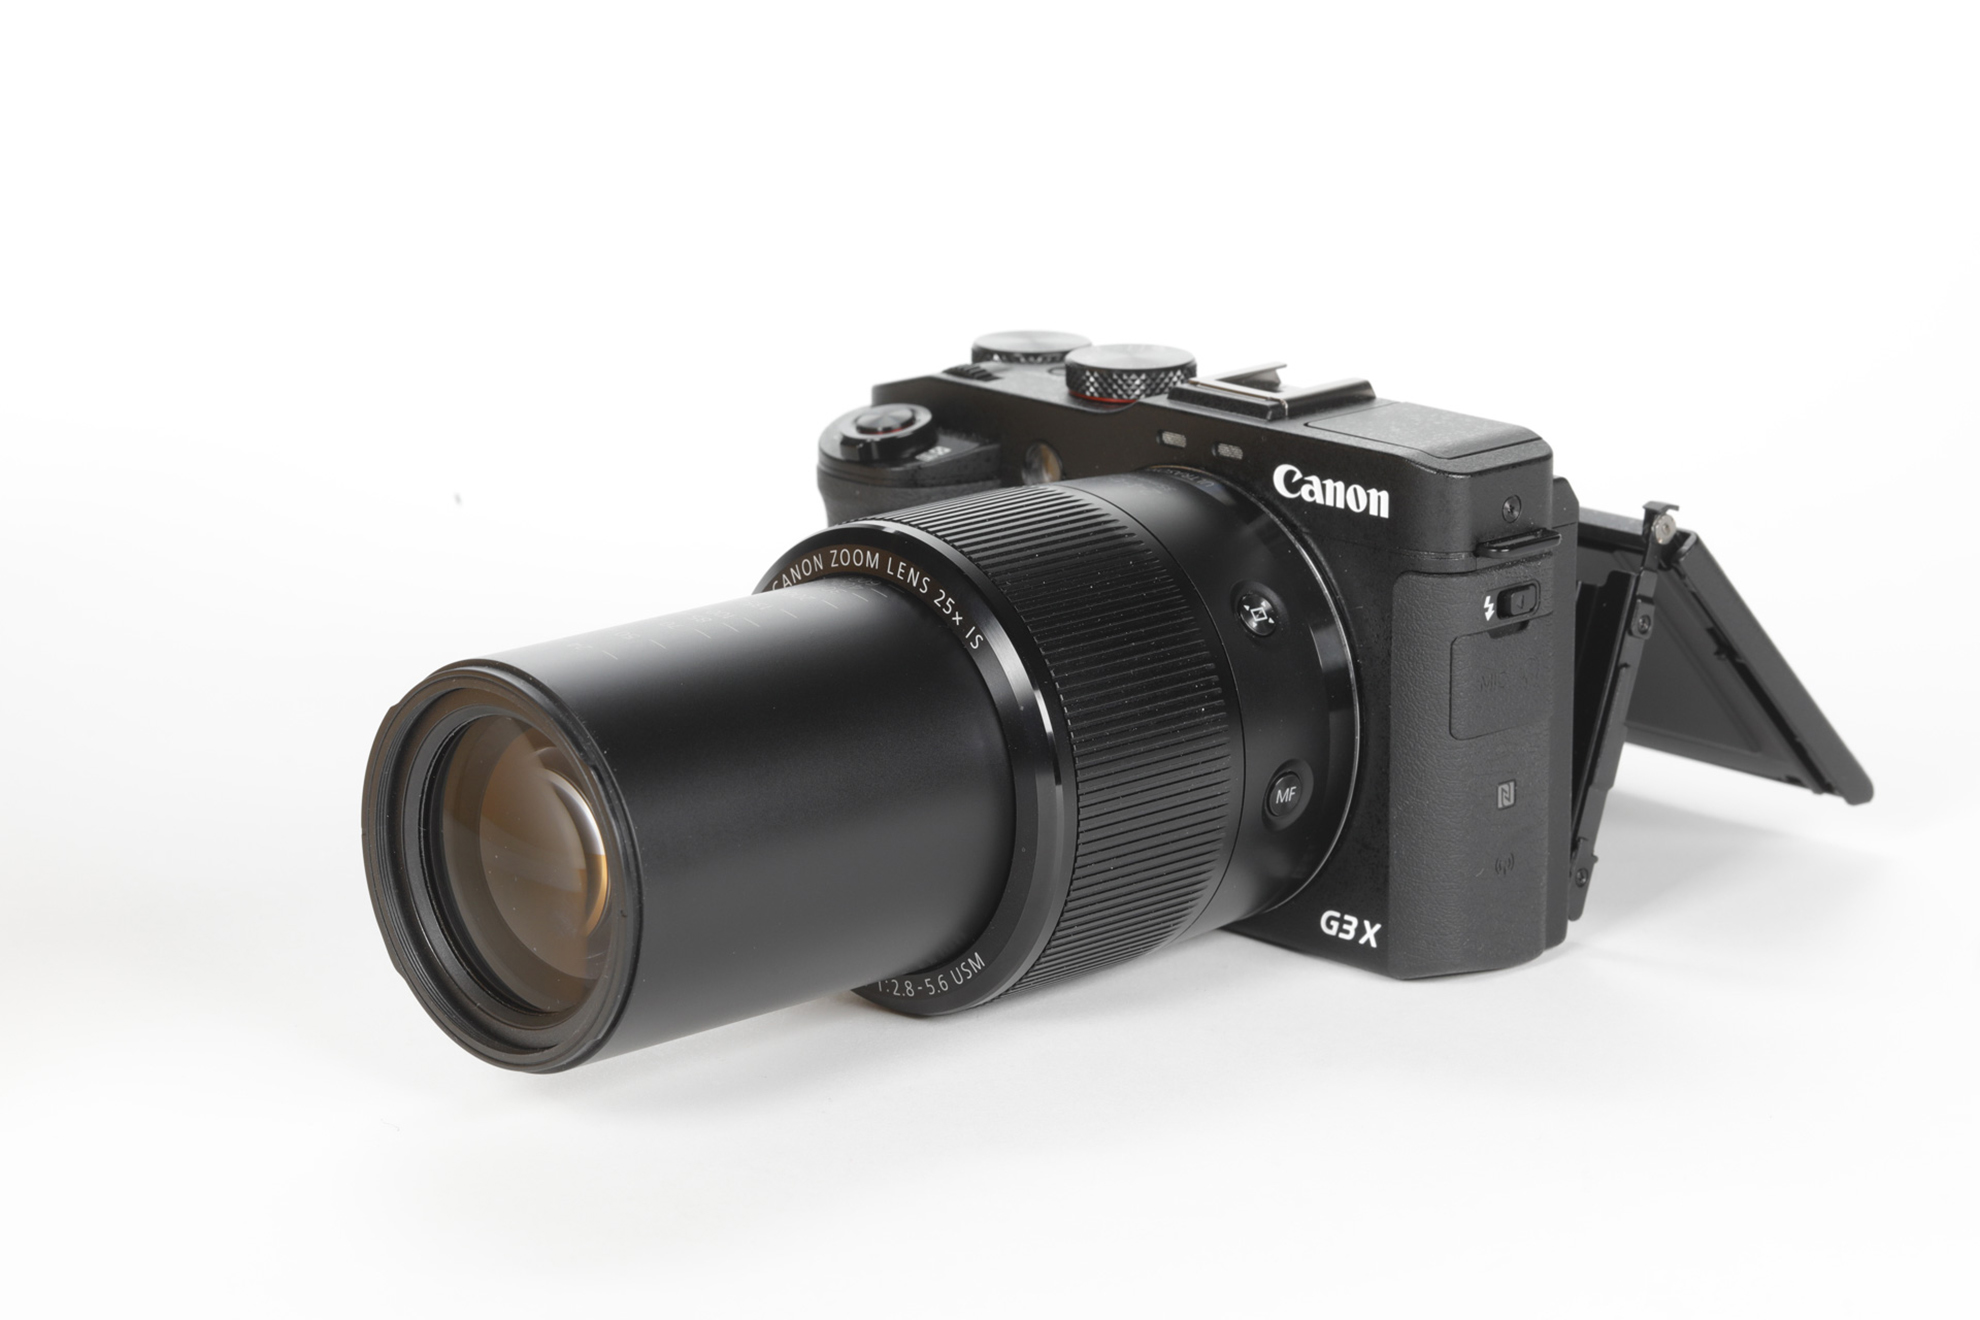 Canon G3 X camera